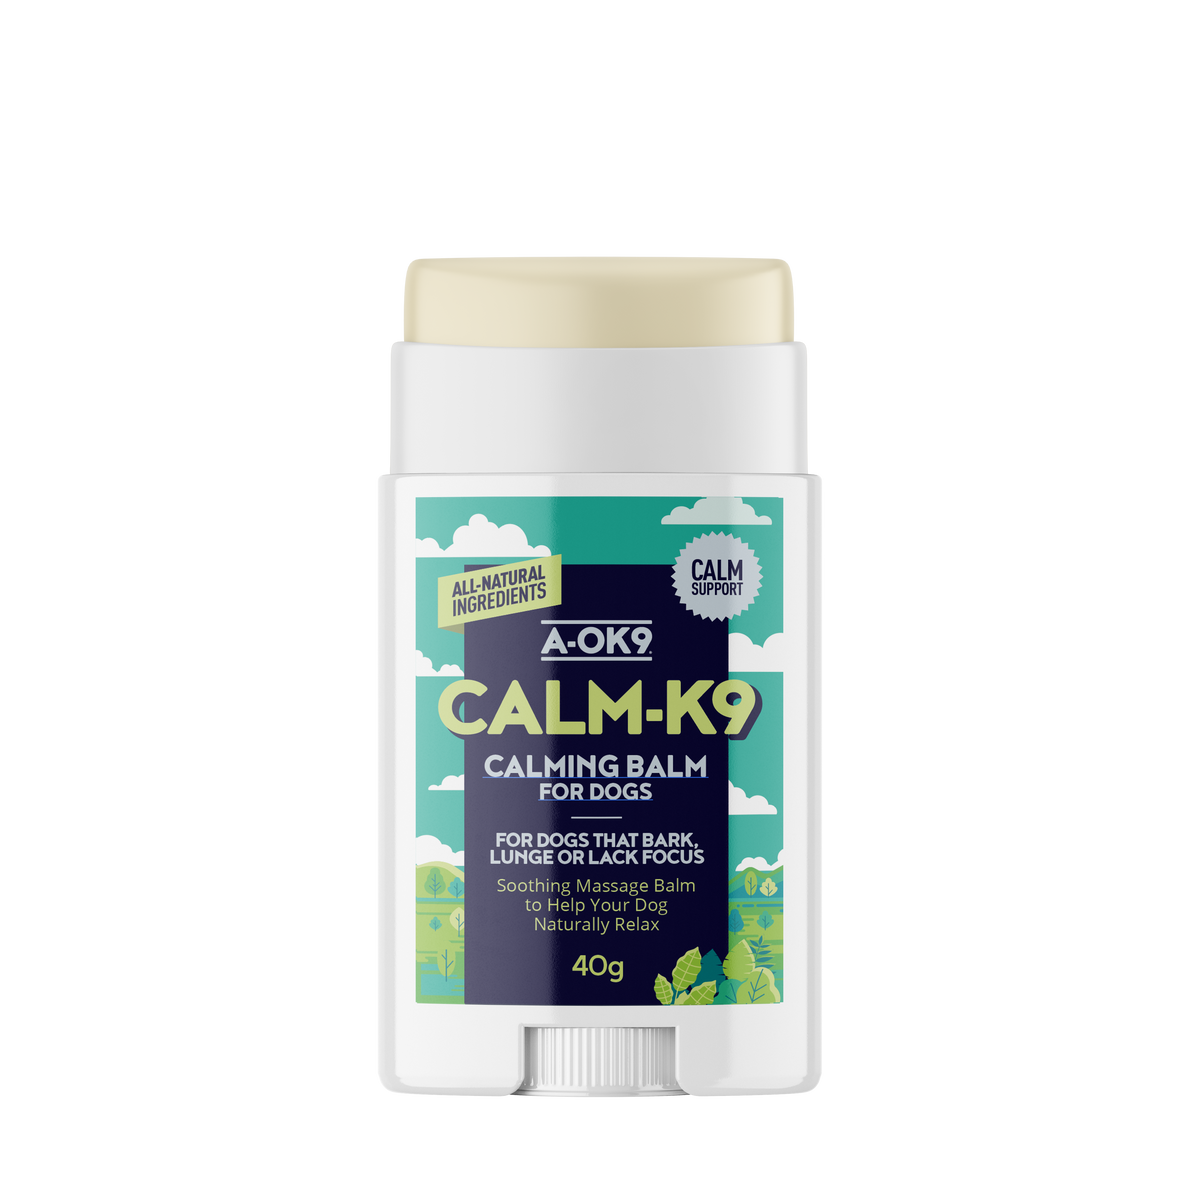 Calm-K9 Calming Balm